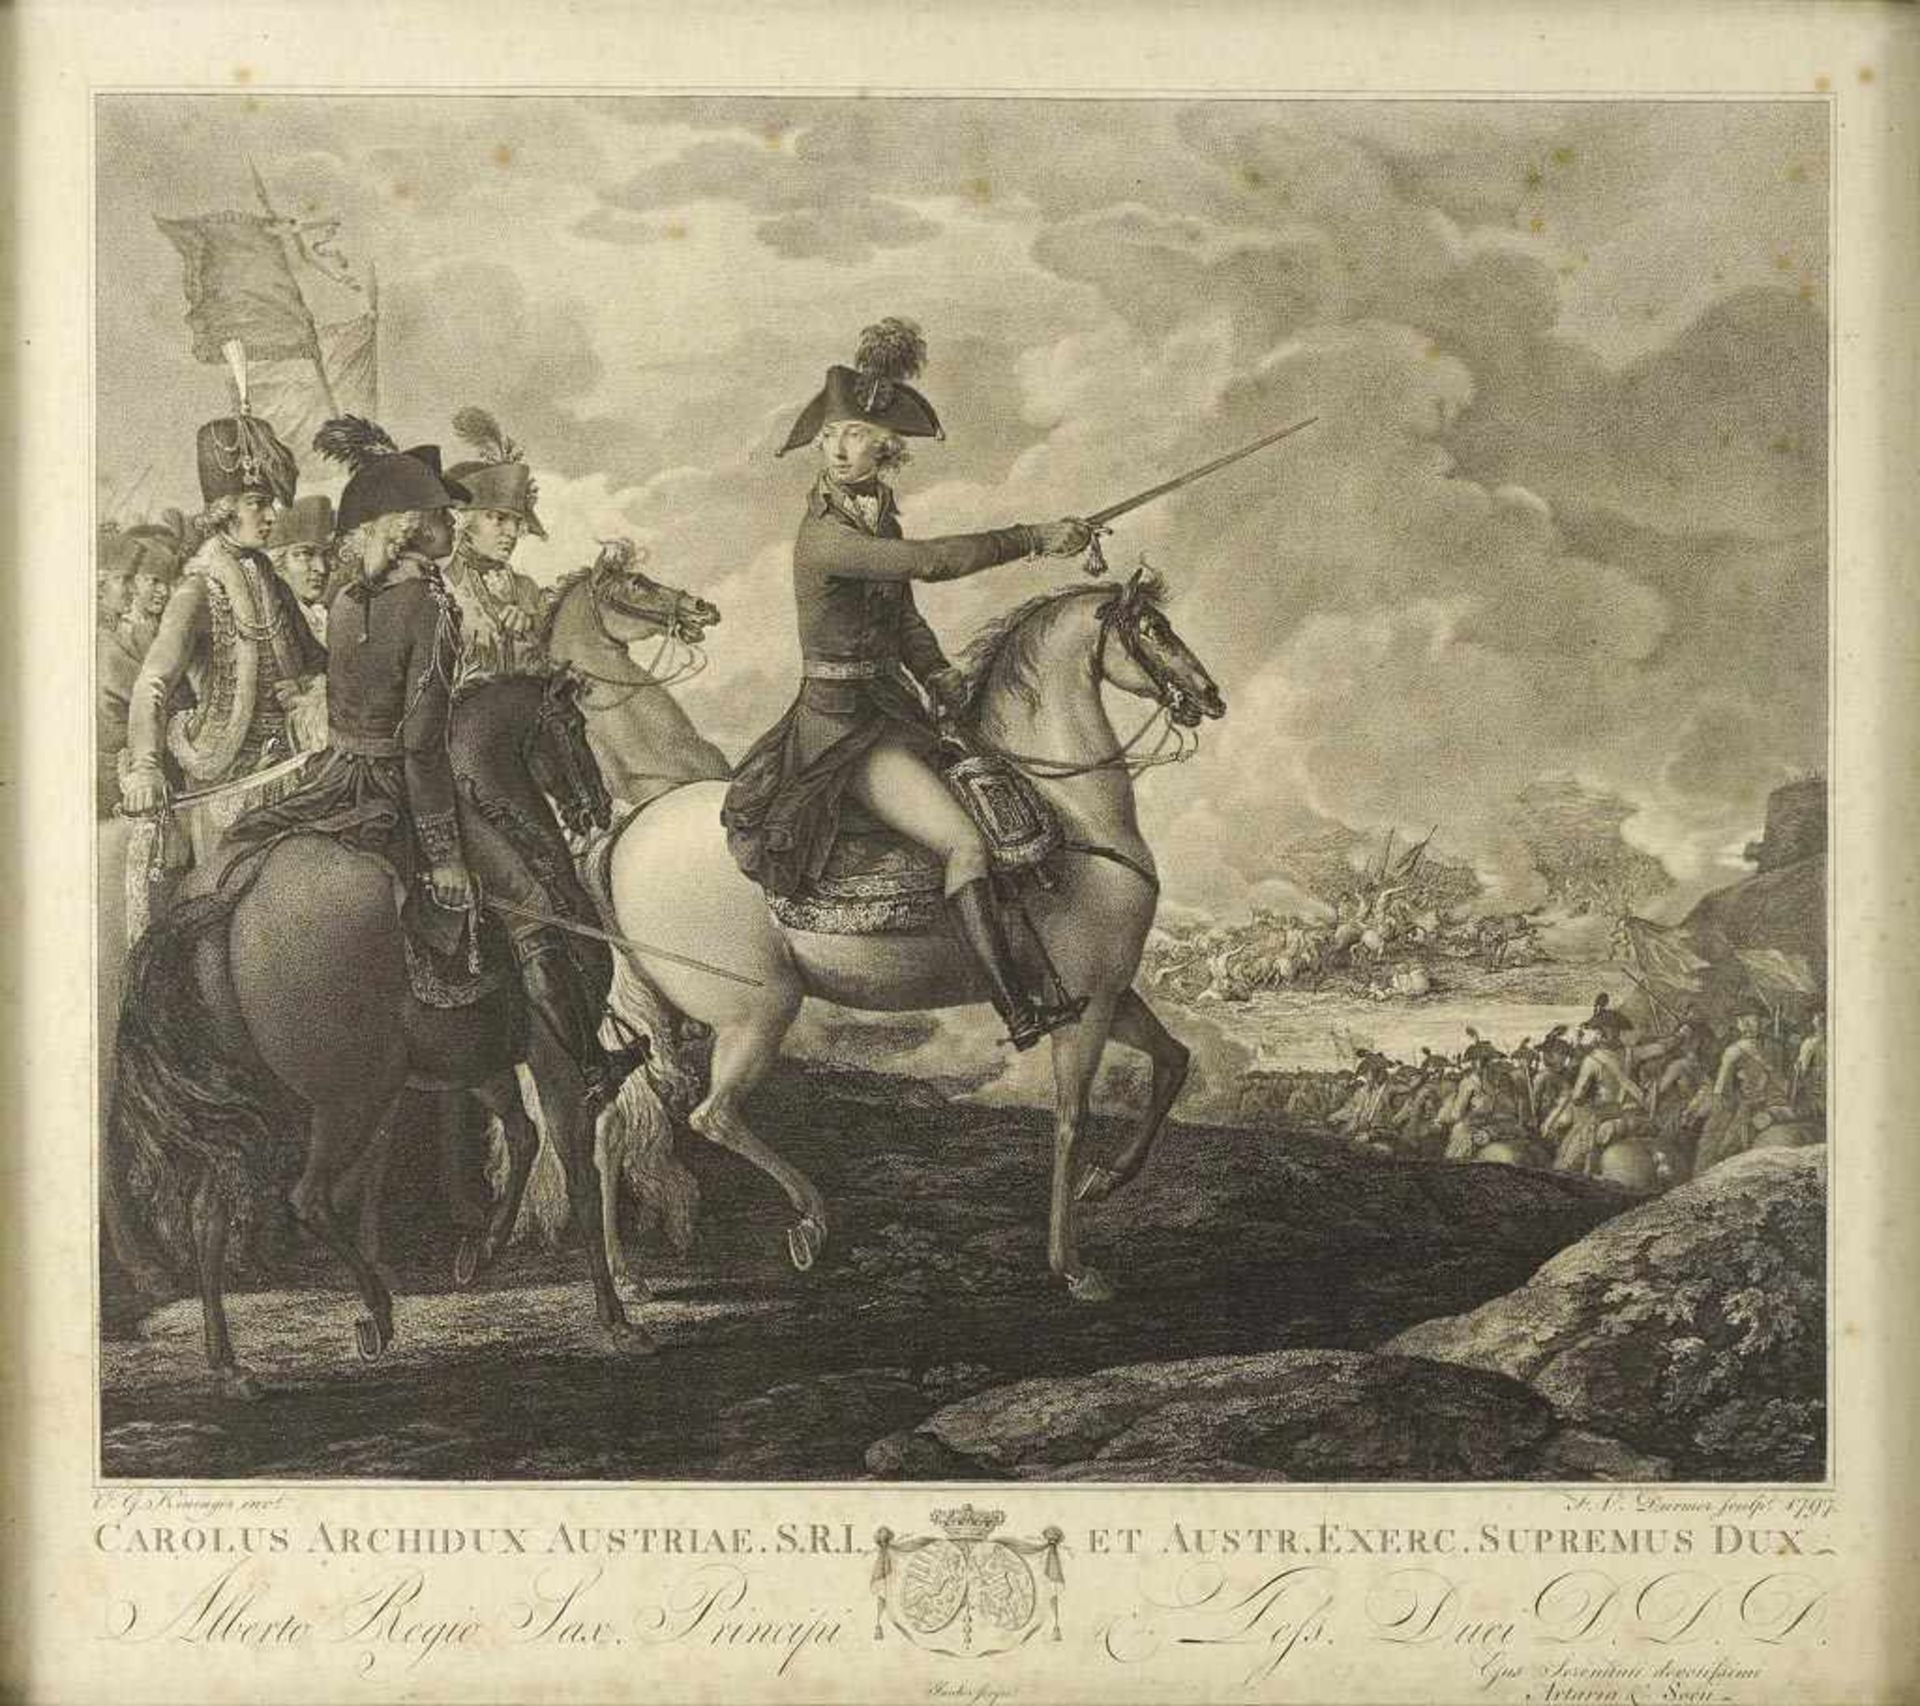 Erzherzog Karl von Österreich in der Schlacht bei Würzburg. "Carolus Archidux Austriae S.R.I. Et